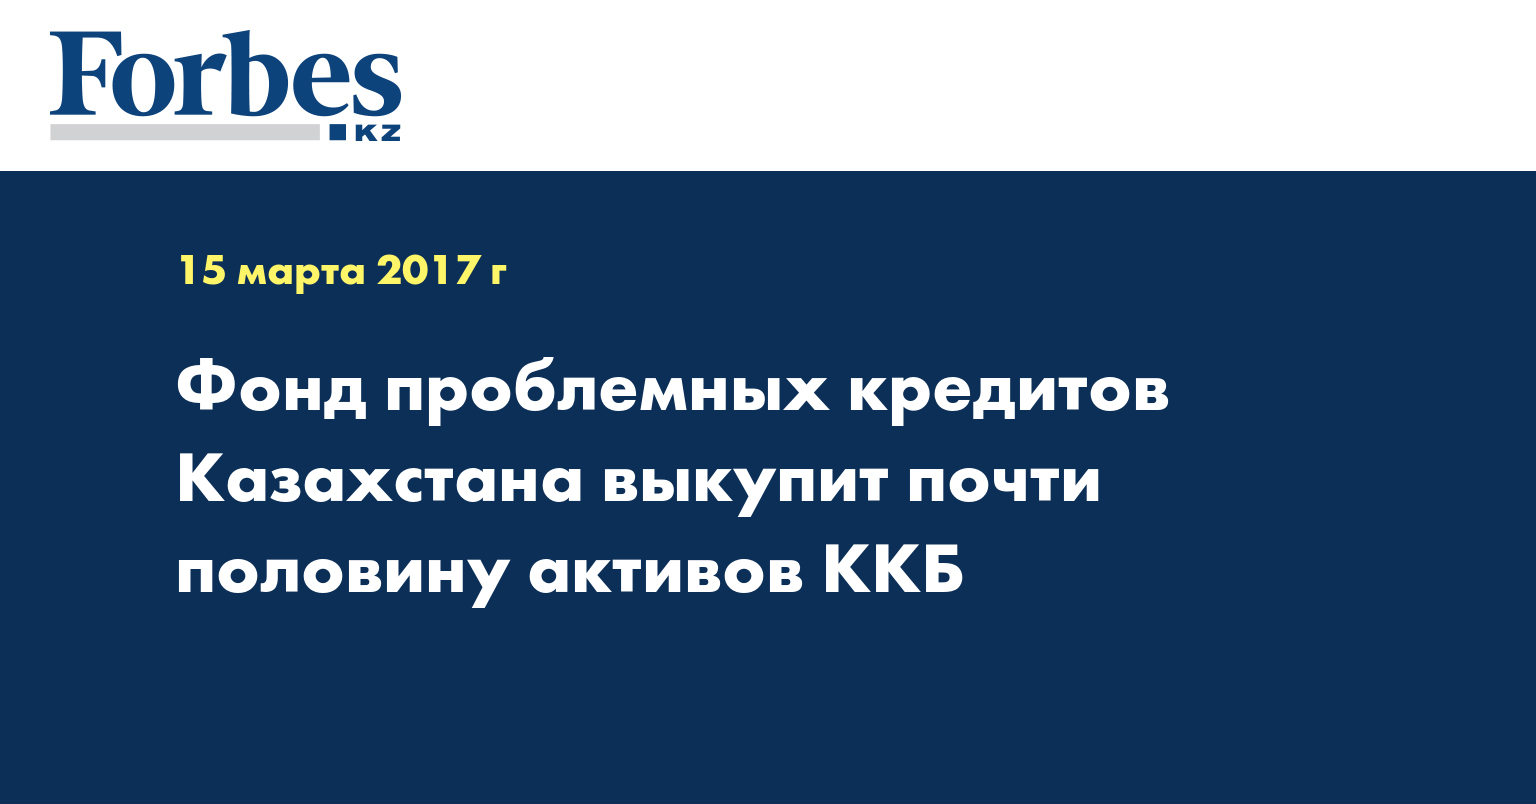 Фонд проблемных кредитов Казахстана выкупит почти половину активов ККБ